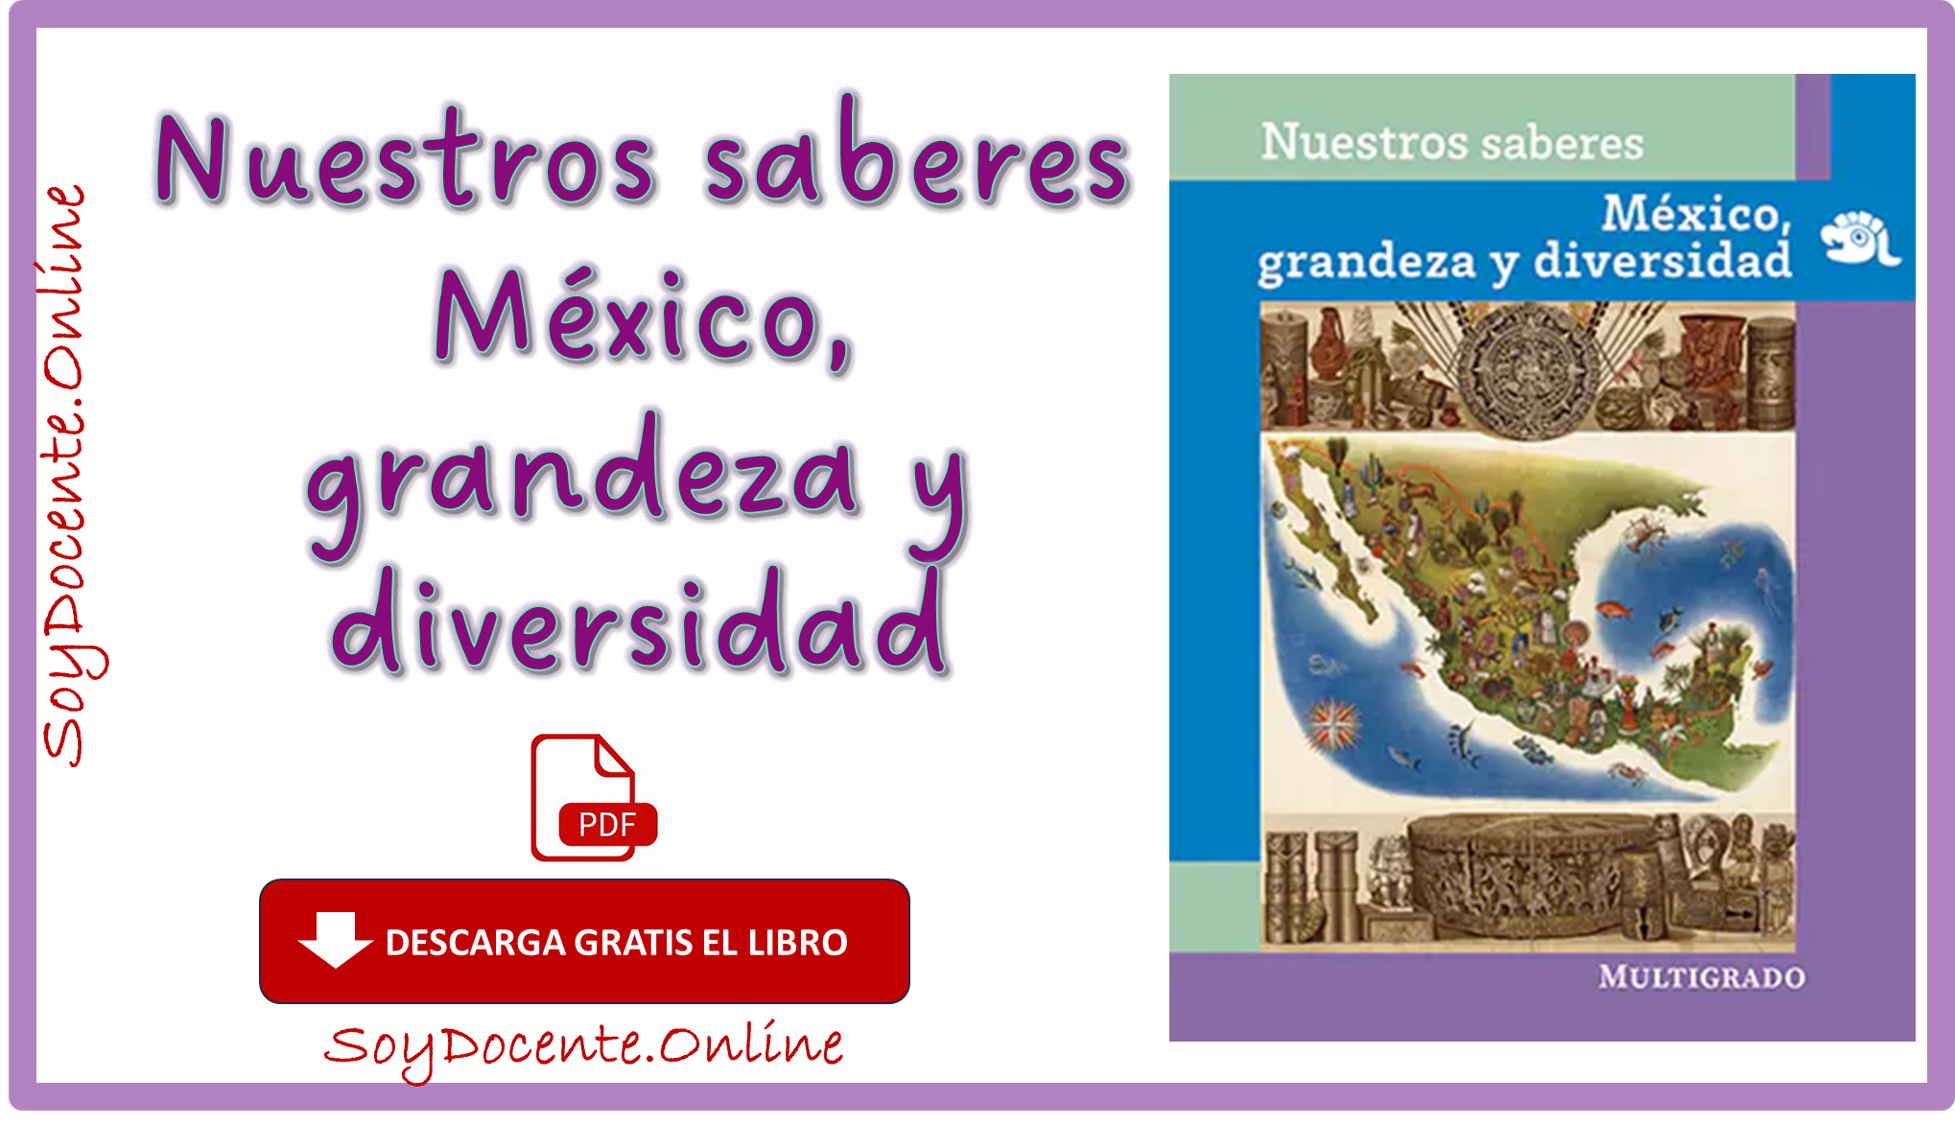 Ya puedes descargar el Libro de Nuestros saberes México, Grandeza y diversidad cuarto grado de Primaria, obra de la SEP, distribuido por la CONALITEG.